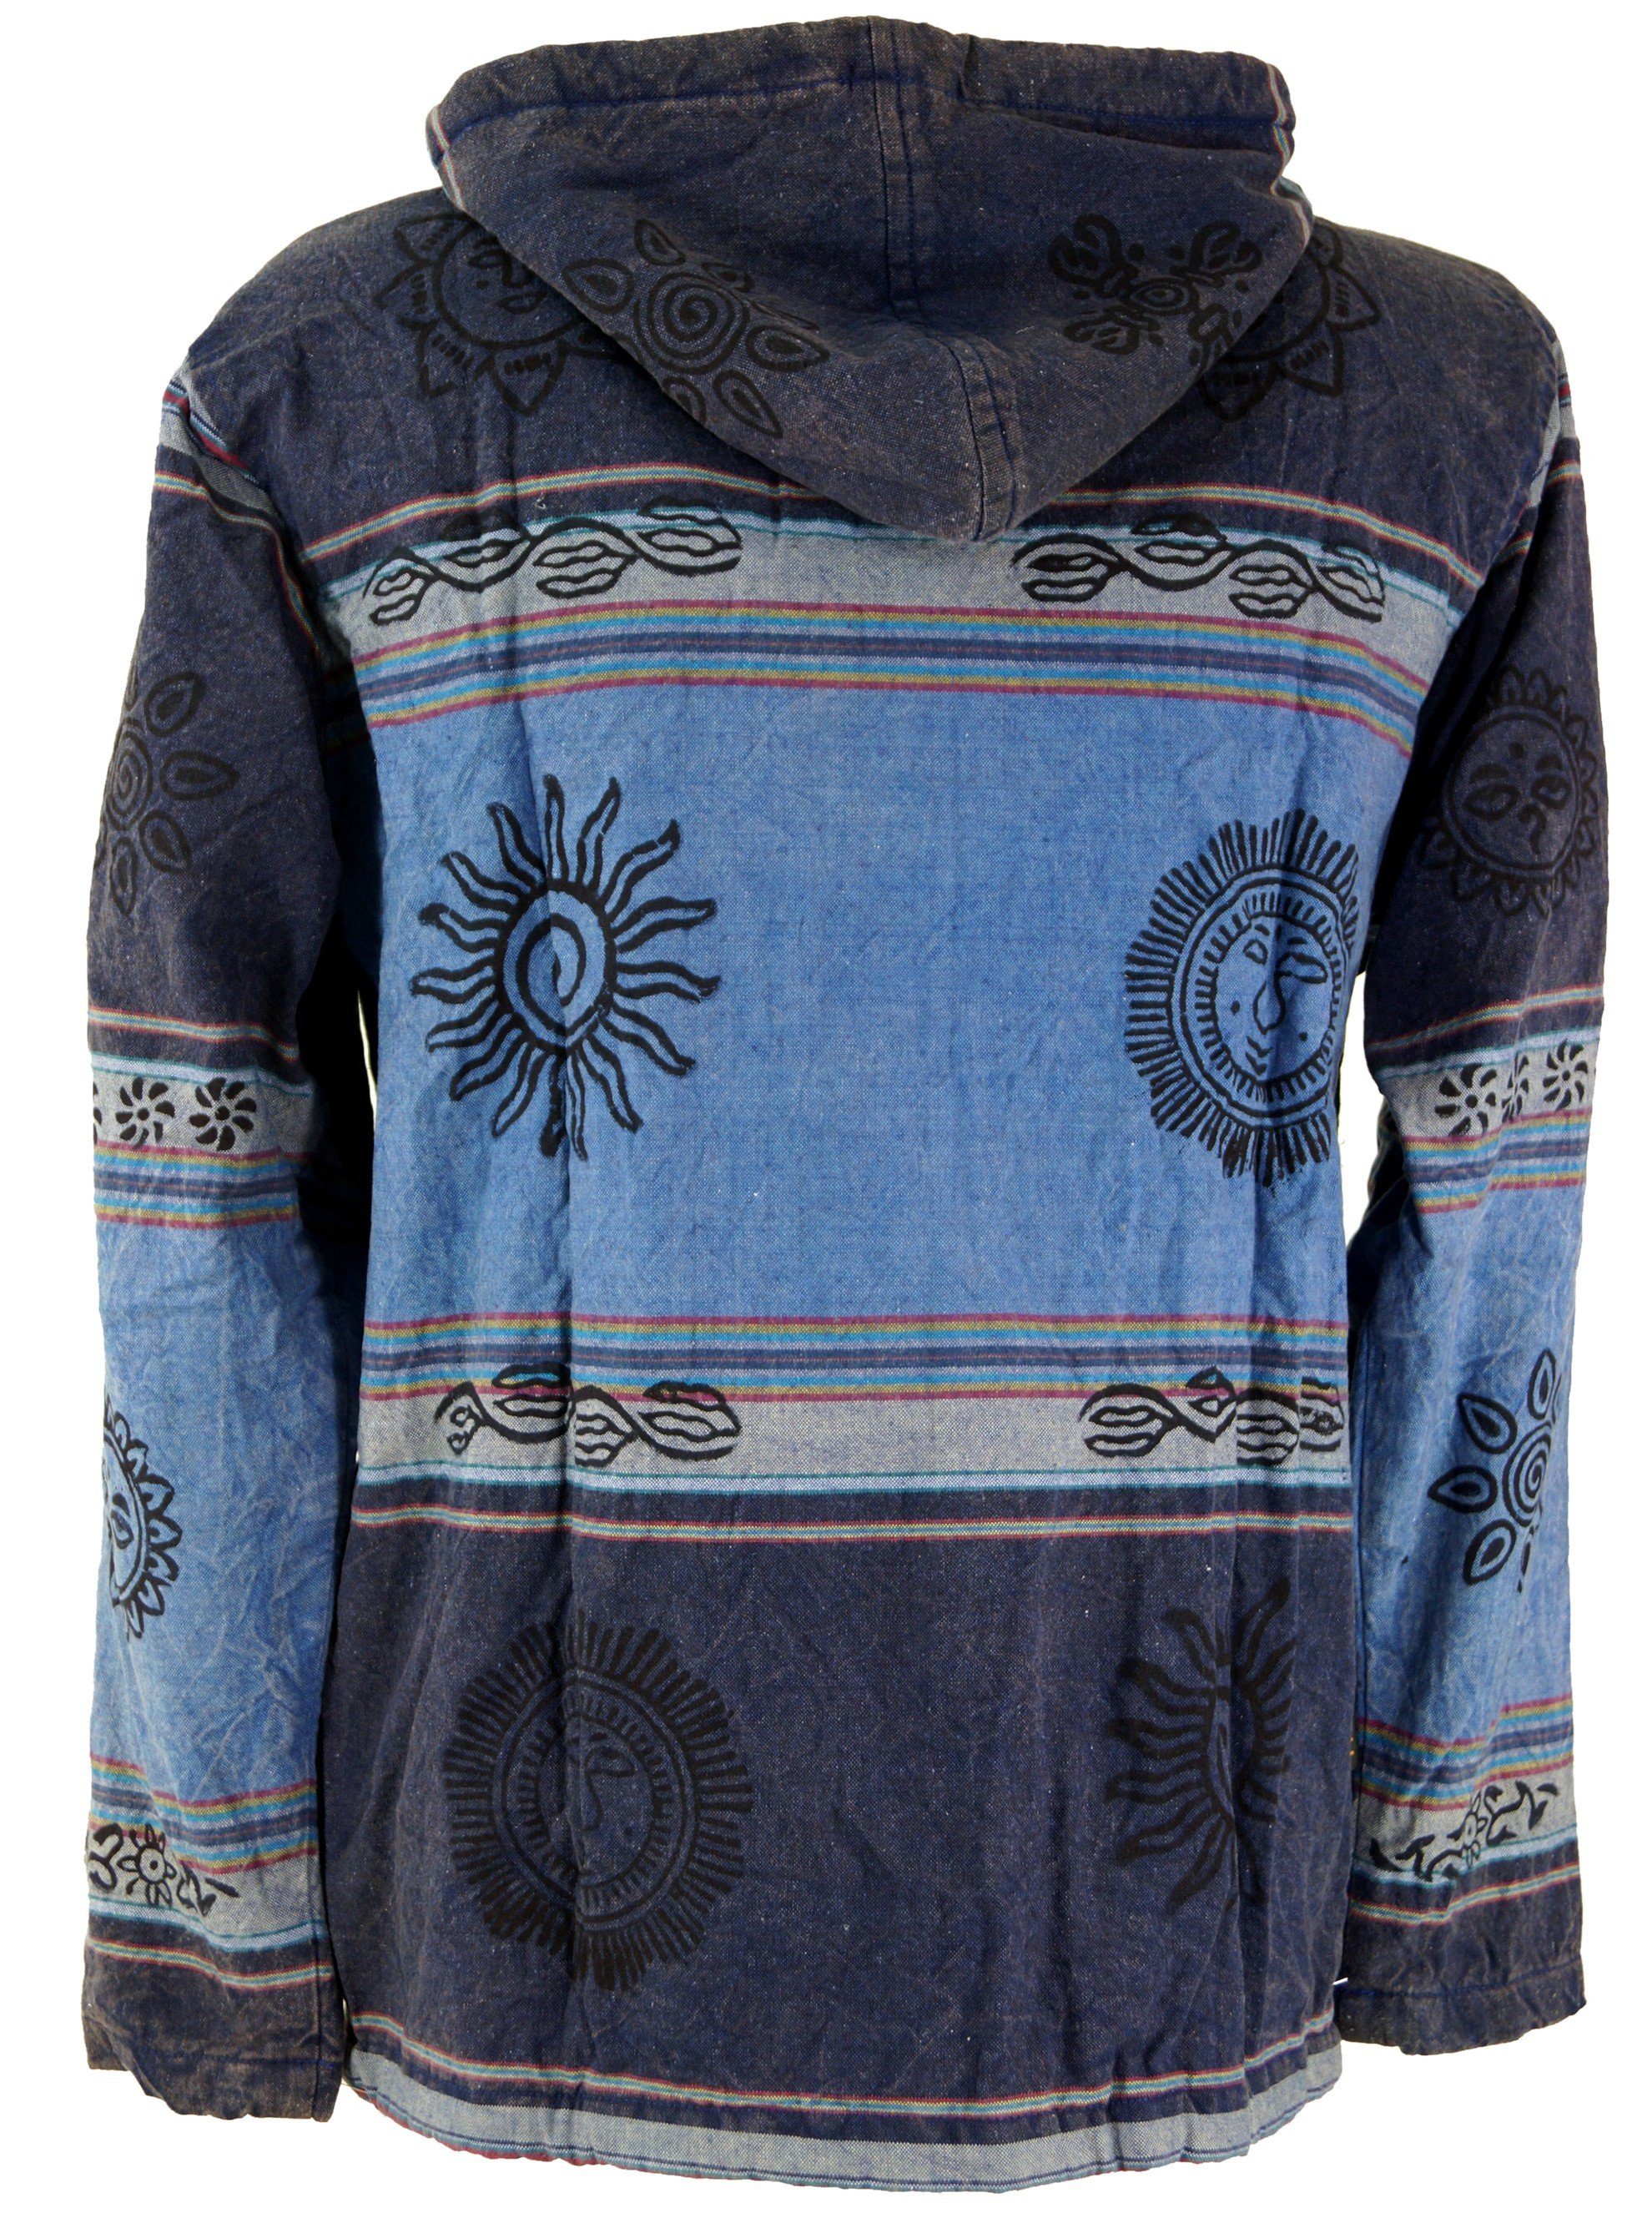 - Strickjacke Jacke alternative Guru-Shop Ethno blau Jacke, Bekleidung Kapuzen Goa